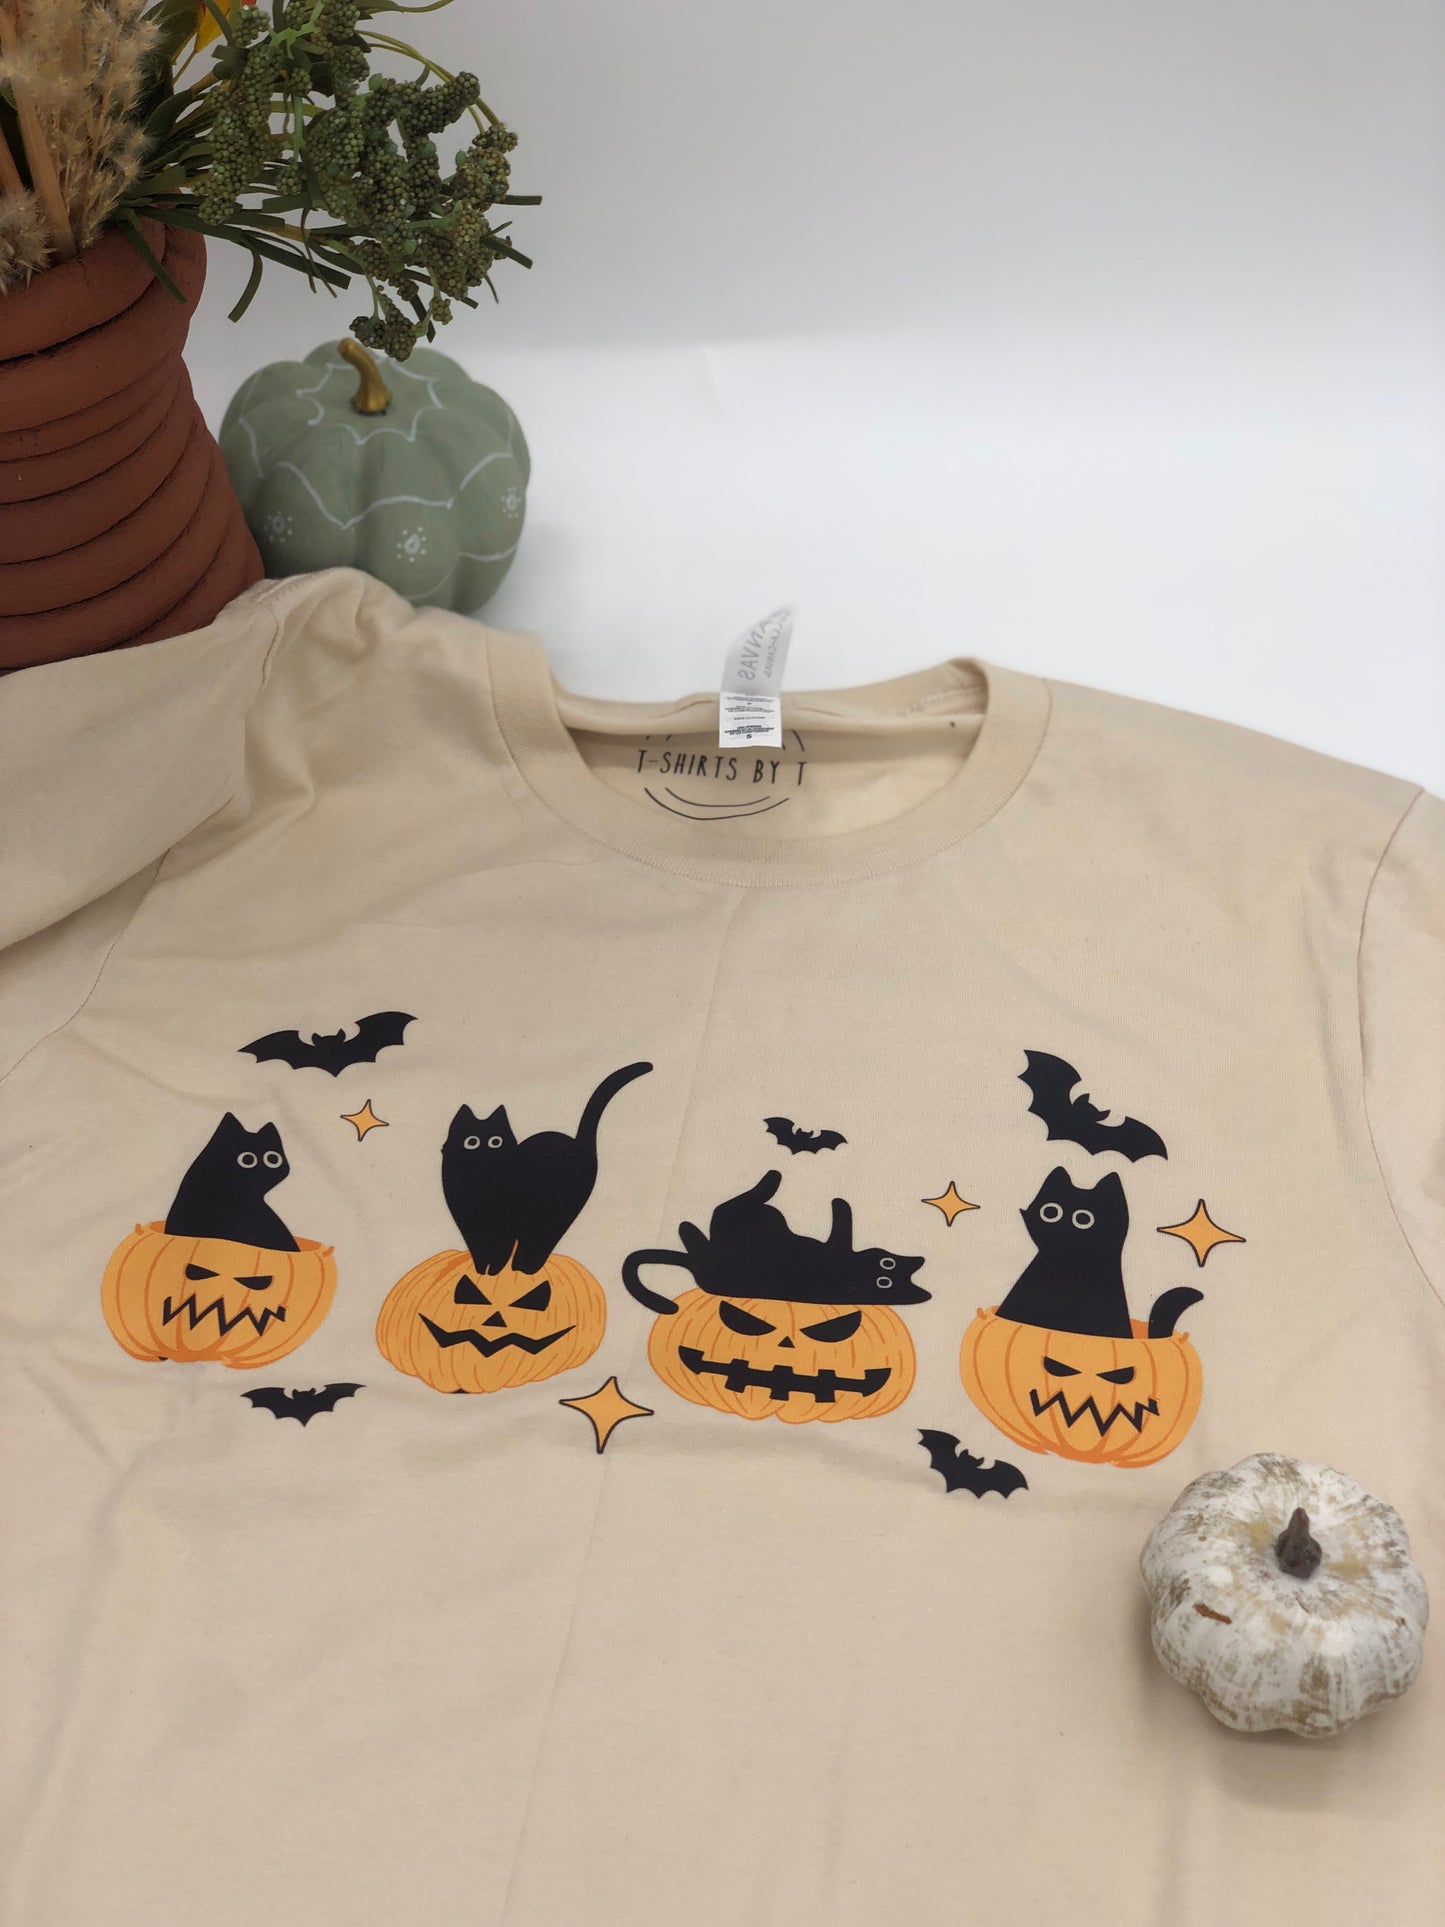 Pumpkins and black cat